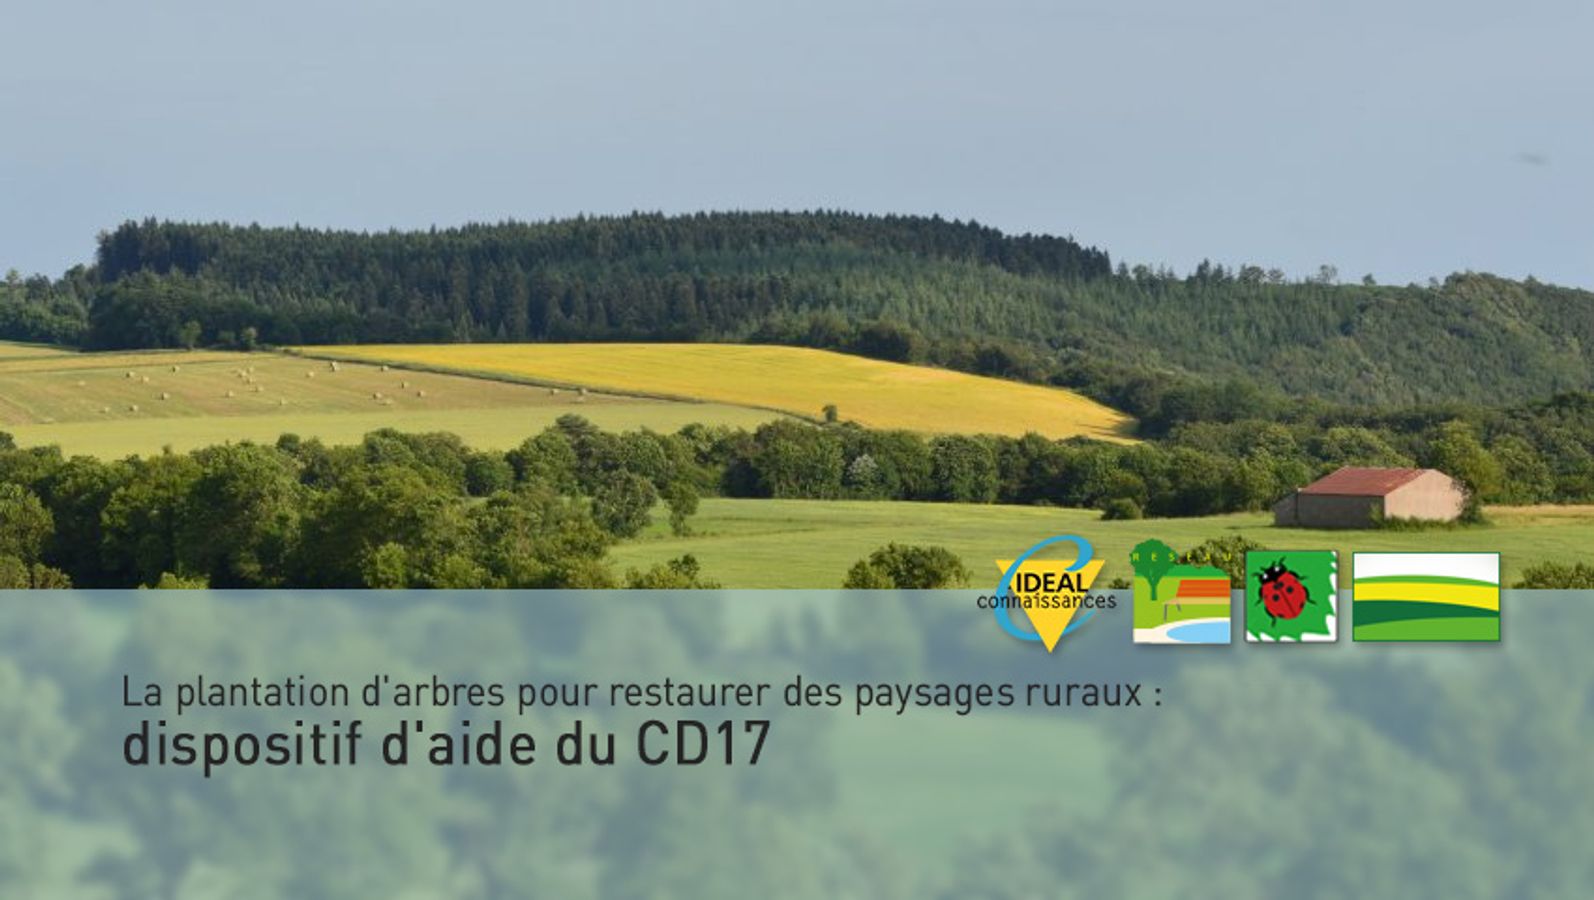 La plantation d'arbres et de haies pour restaurer des paysages ruraux : dispositif d'aide du CD17